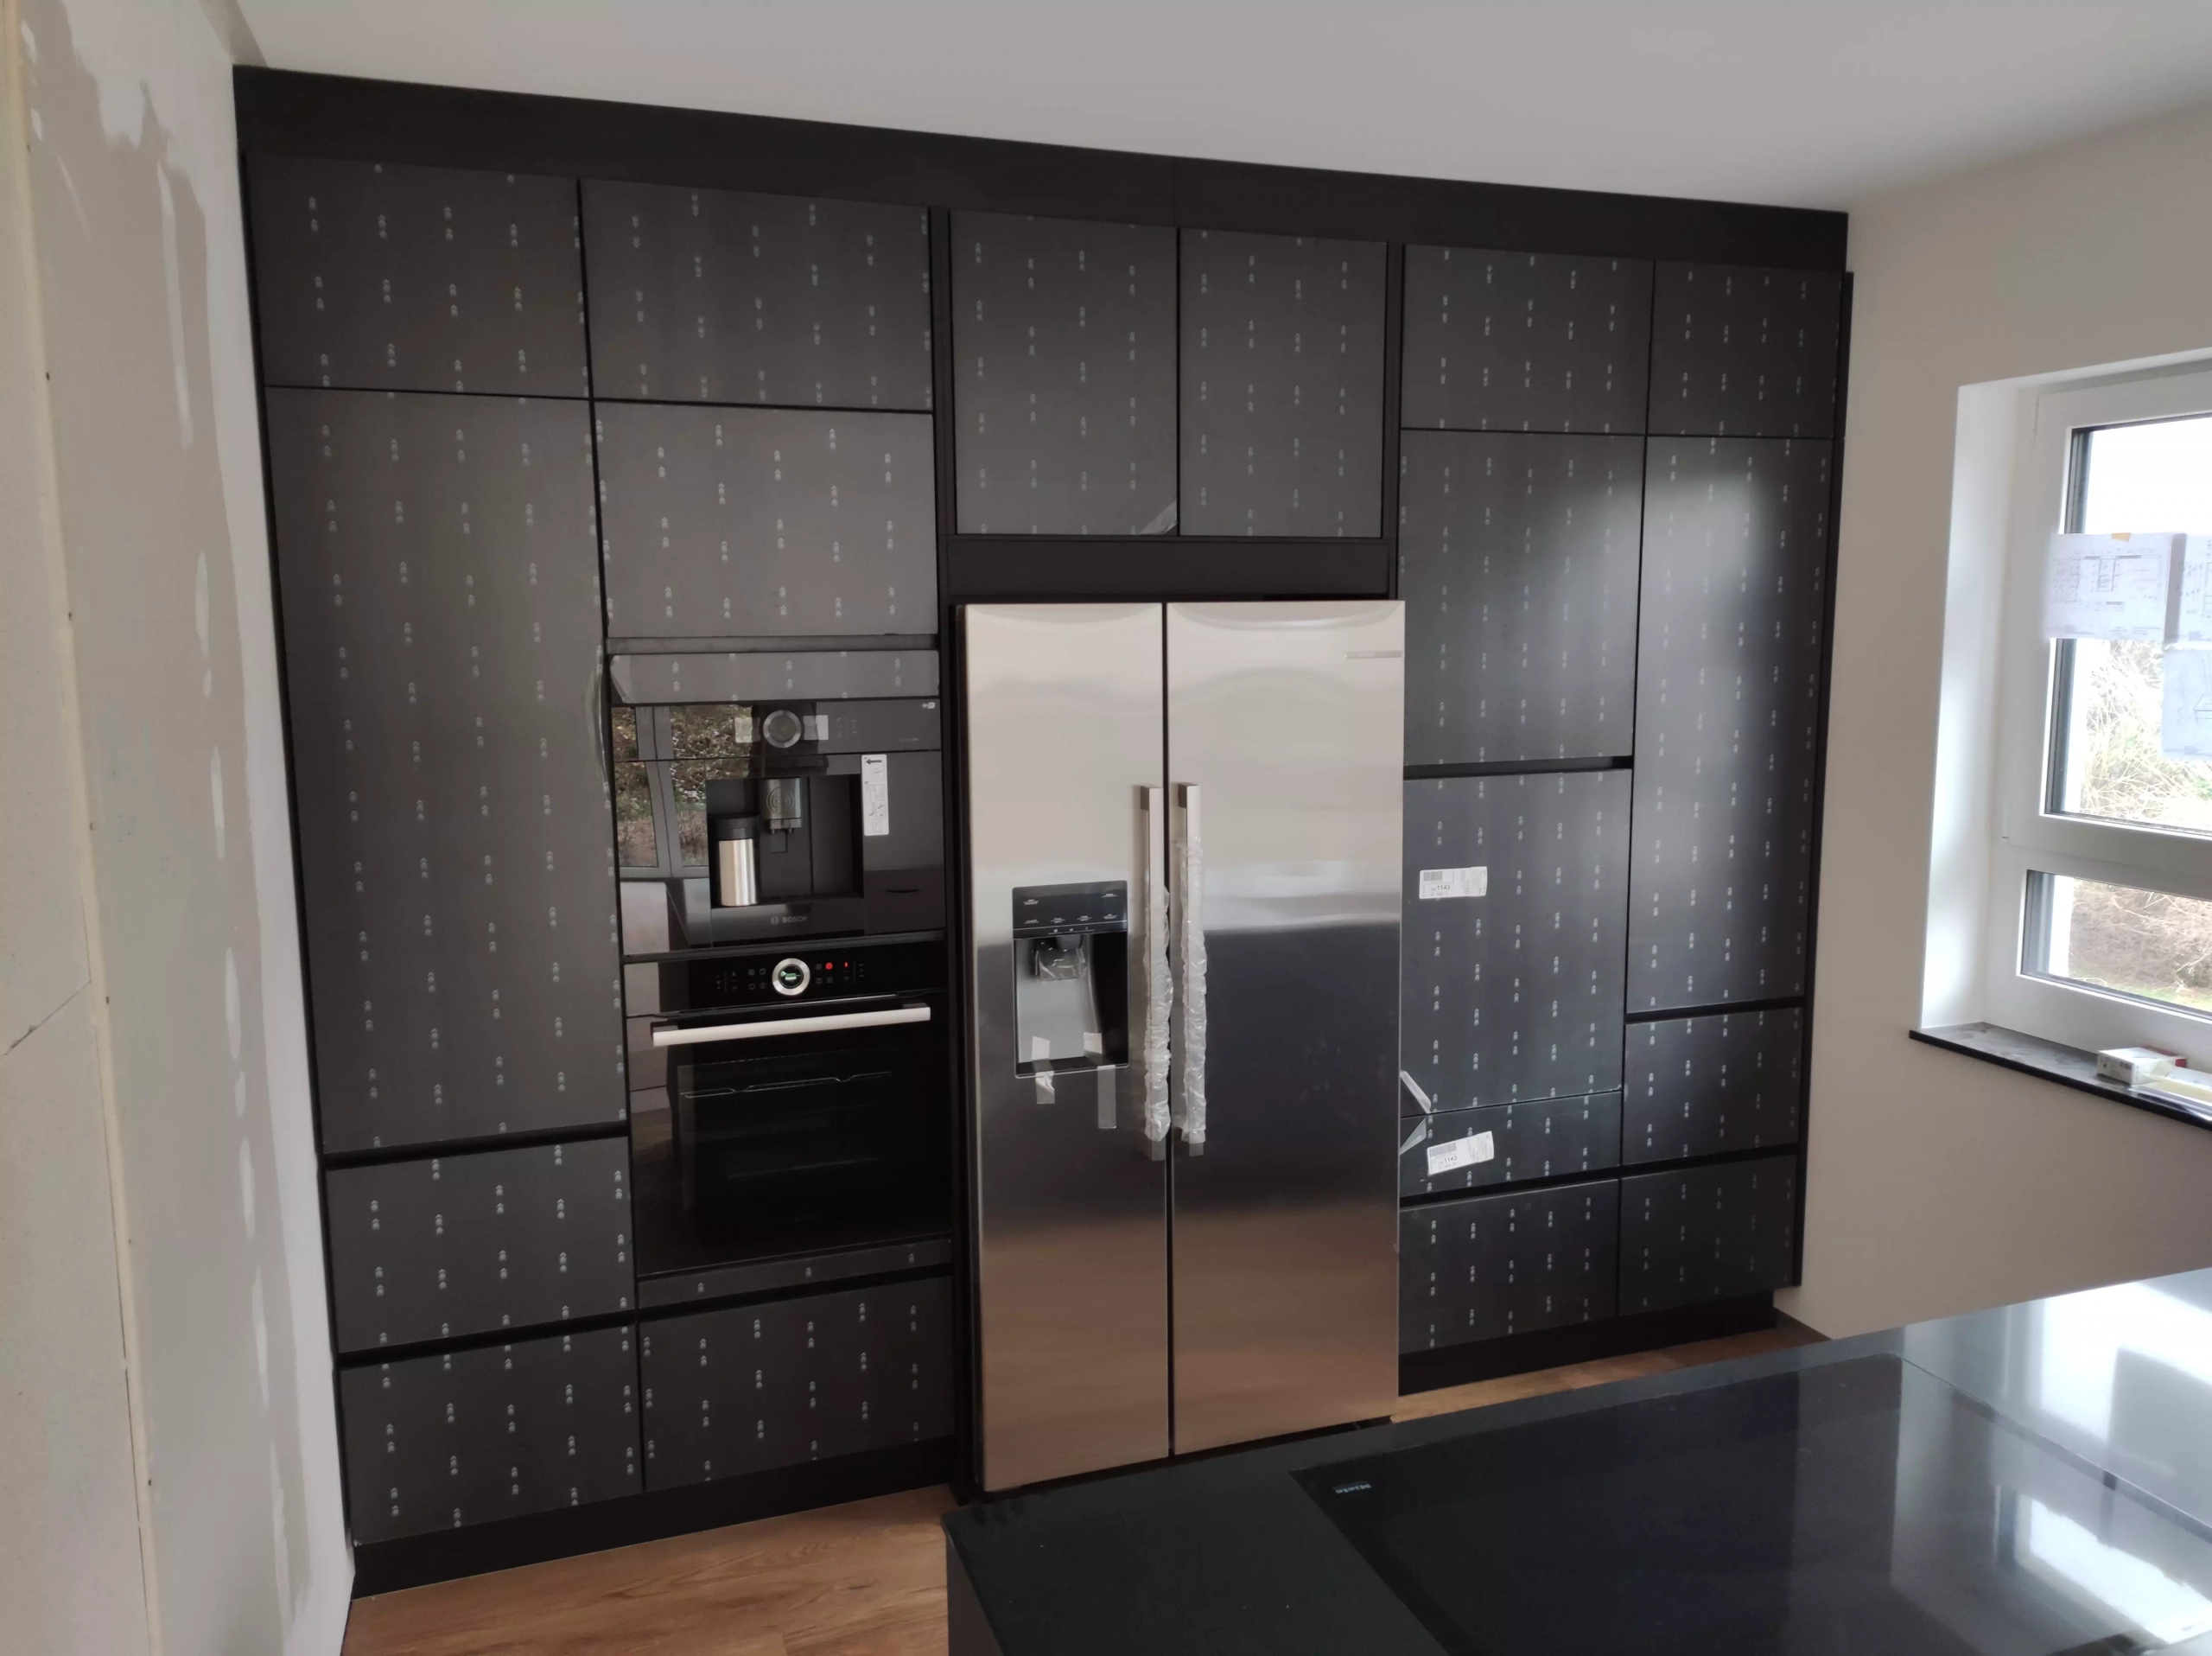 Moderne, schwarze Küchenrückwand mit Kühlschrank, Ofen und Kaffeemaschine, im Aufbauprozess